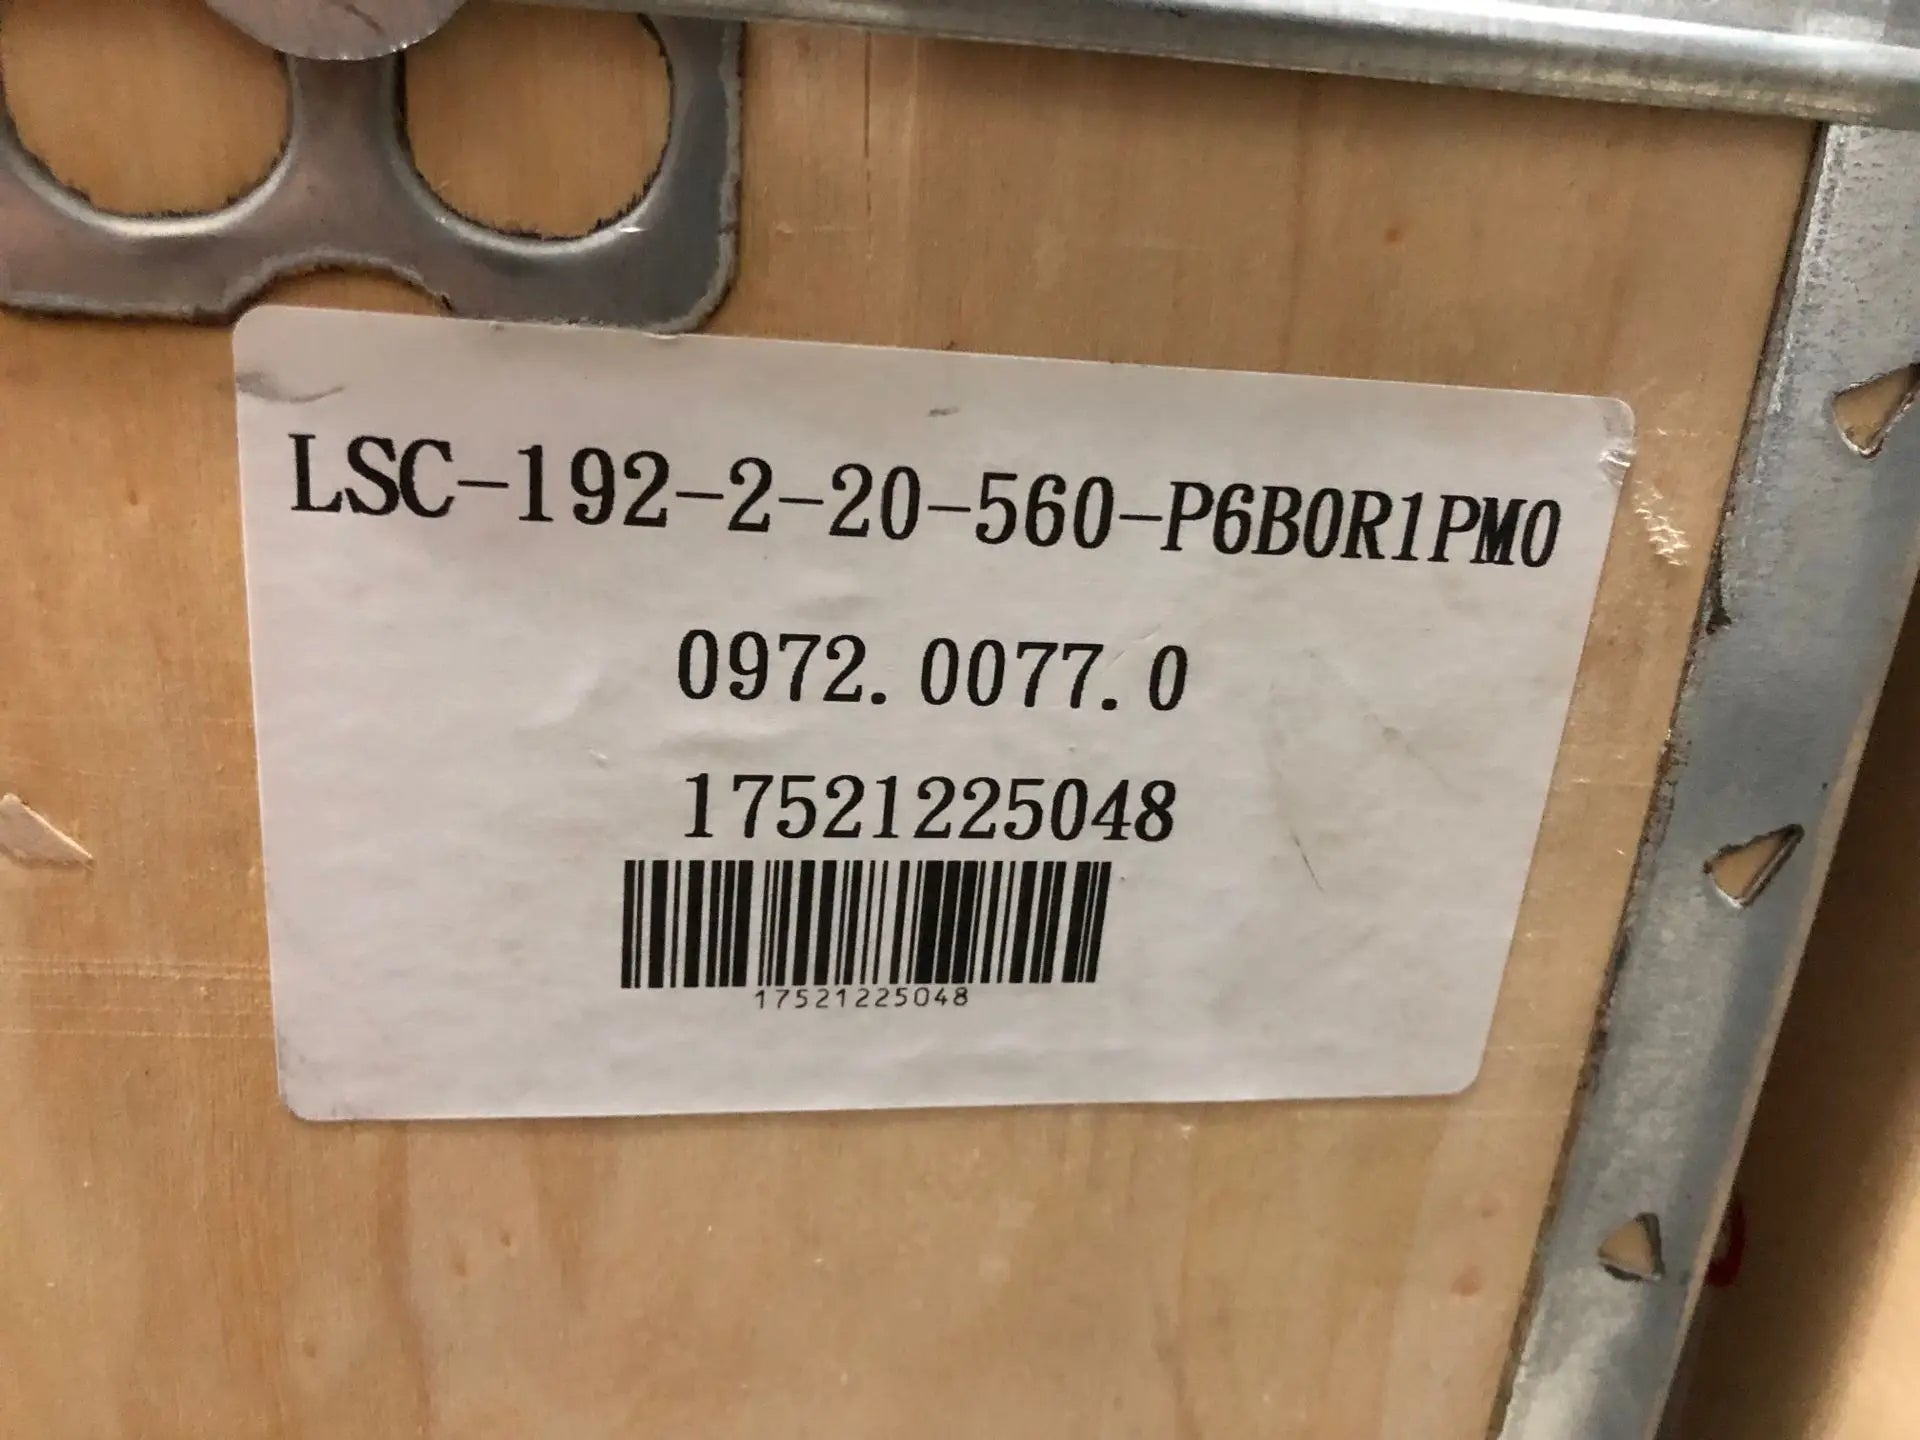 New In Box LSC-192-2-20-560-P6B0R1PM0 Lust Servo Motor